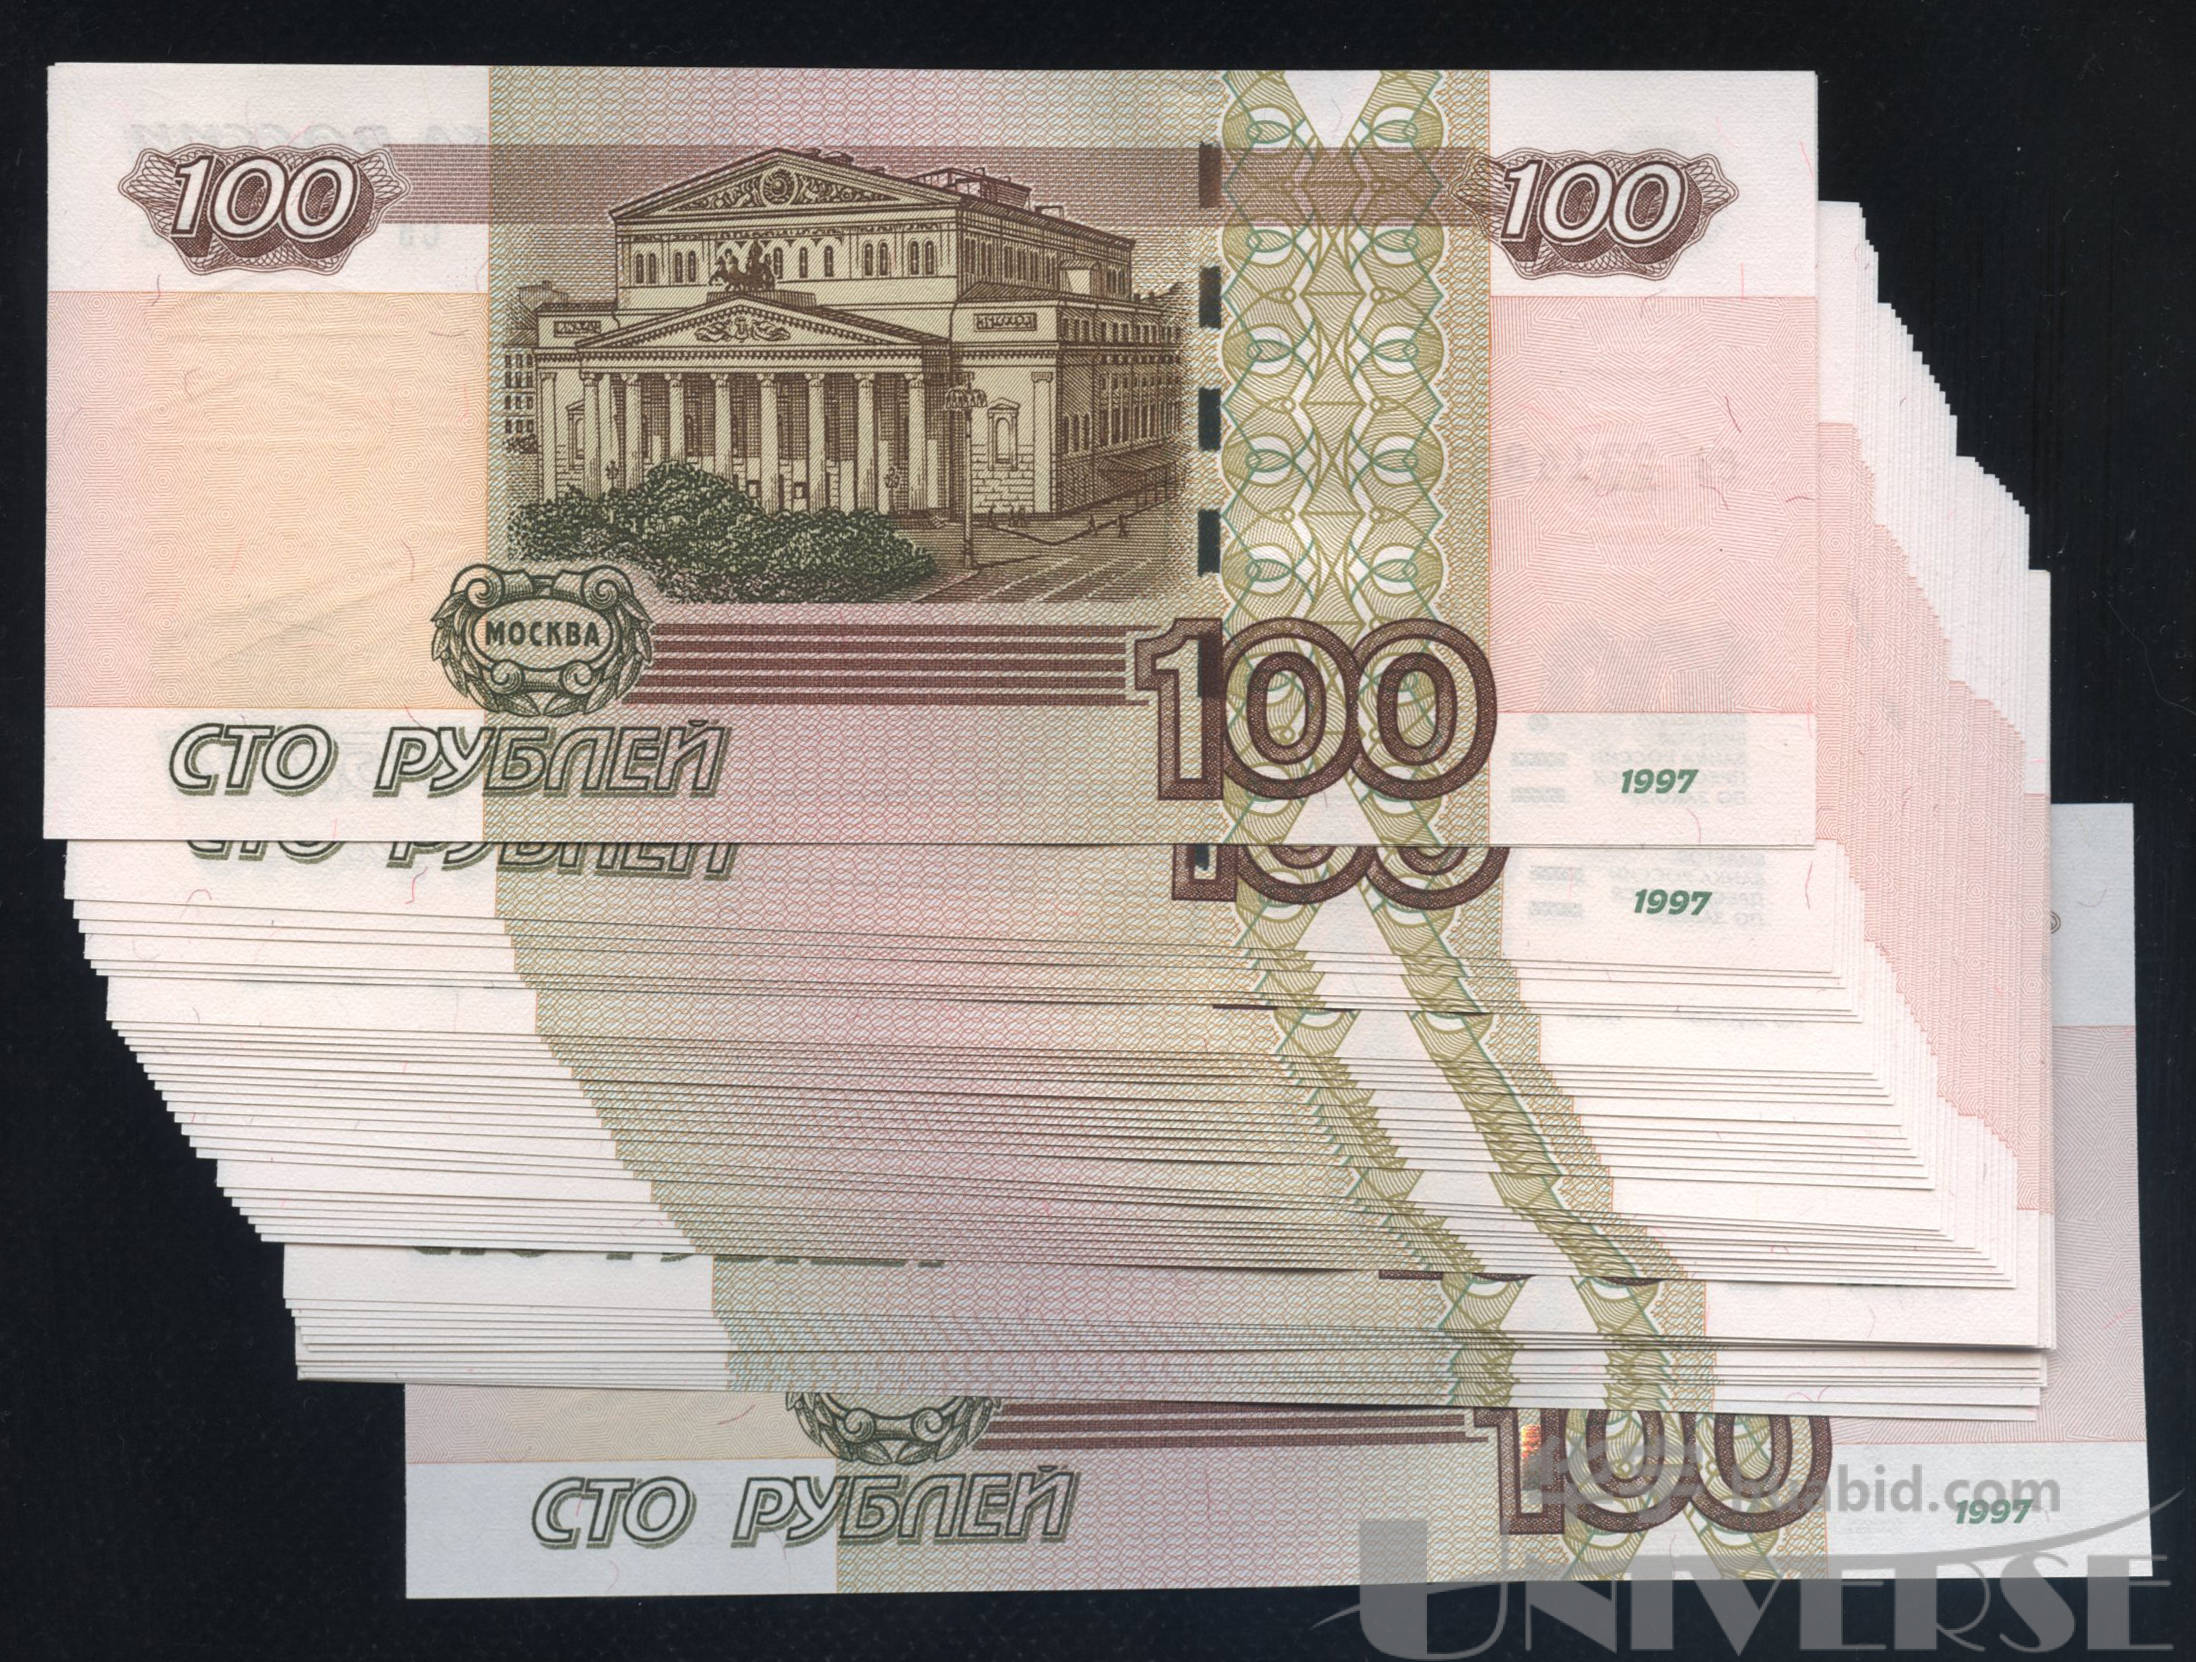 1912年俄罗斯沙俄500卢布纸币-价格:880元-se93940006-外国钱币-零售-7788收藏__收藏热线